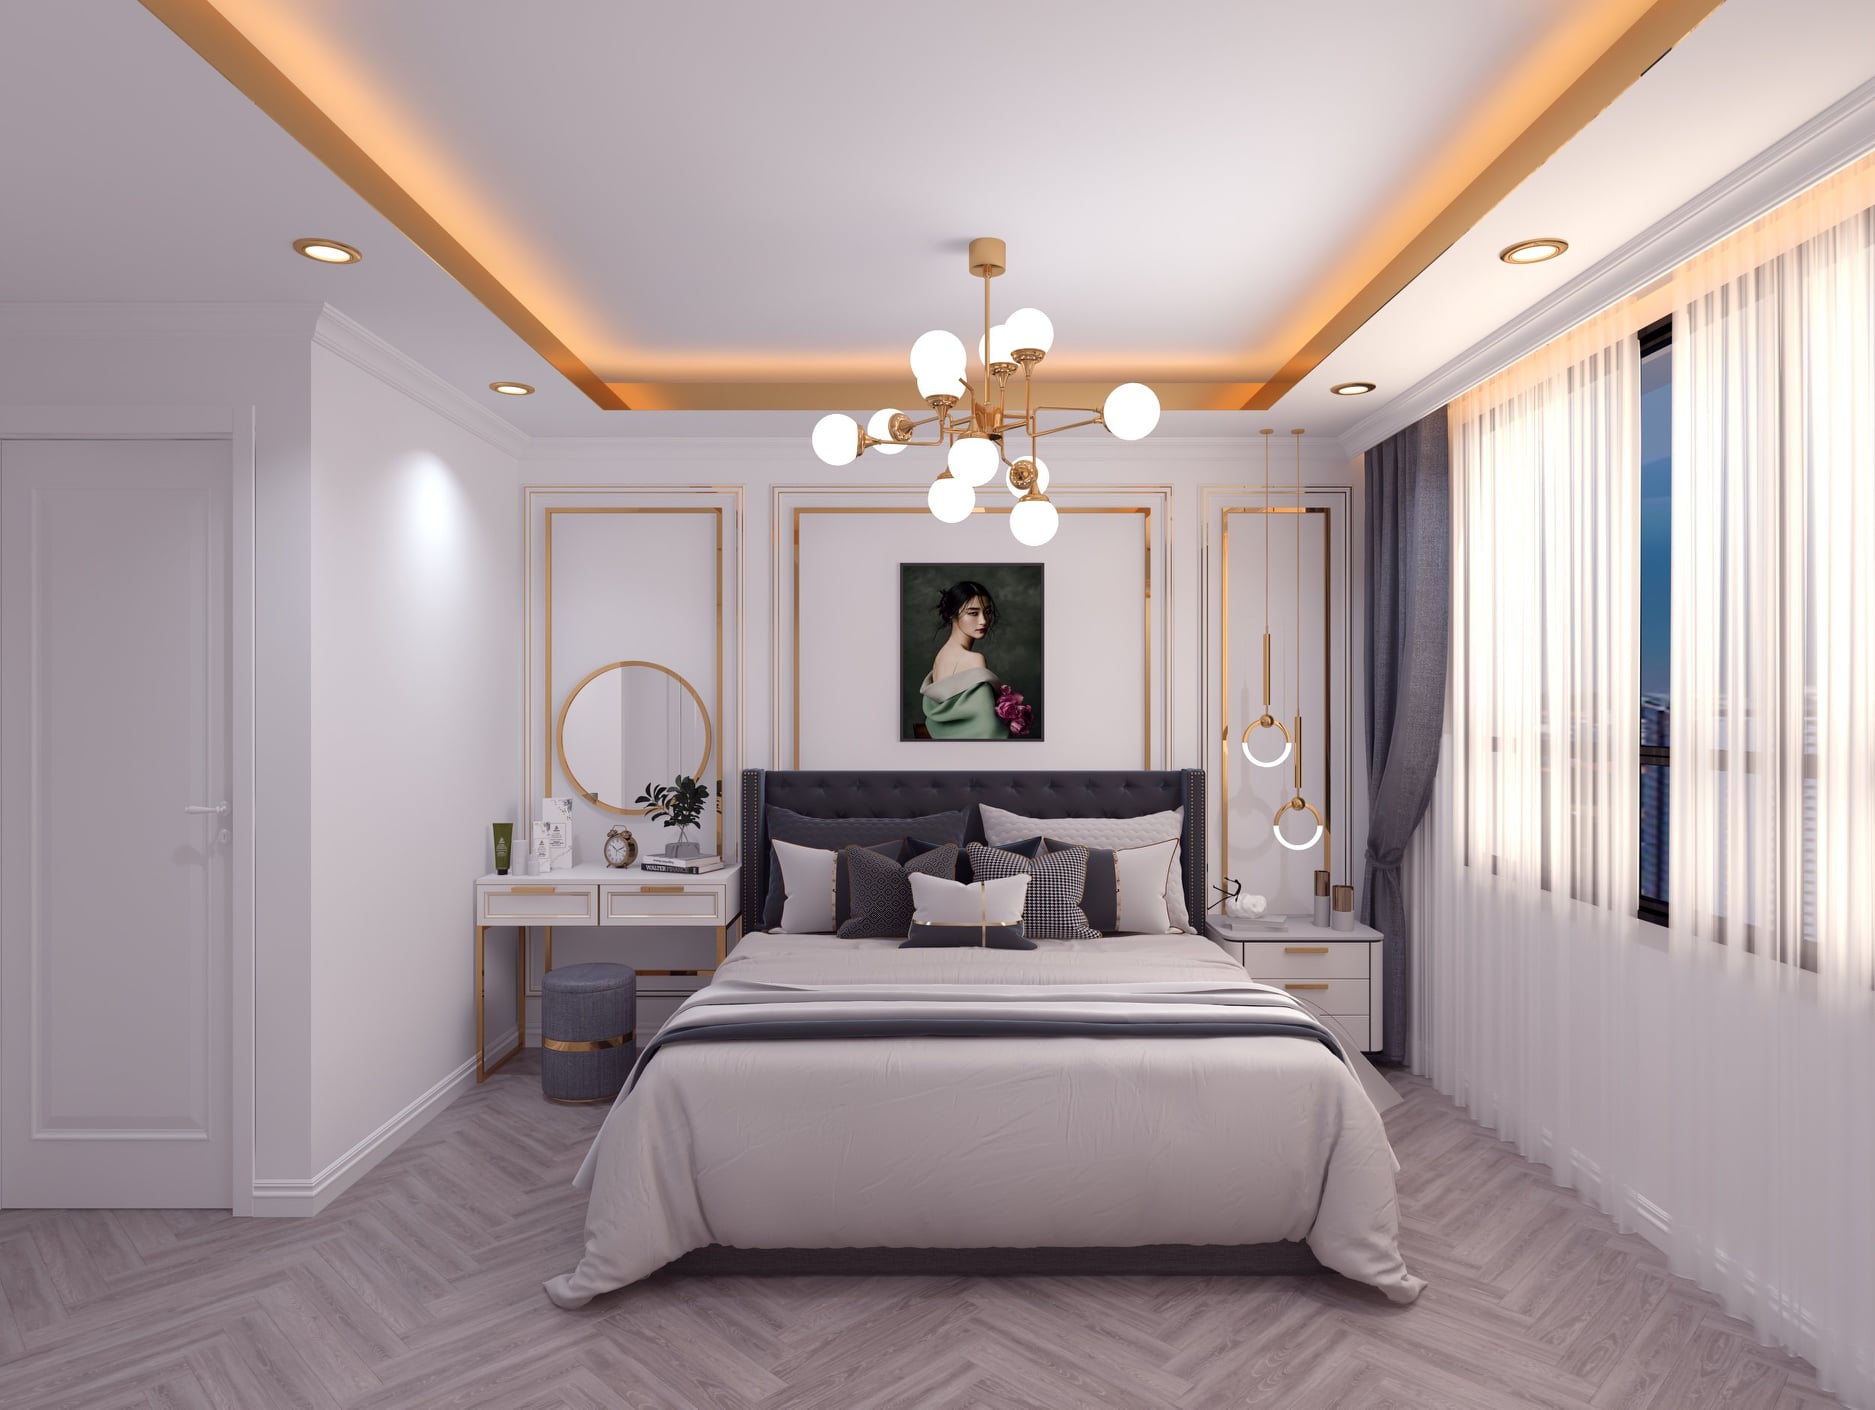 Xu hướng thiết kế nội thất phòng ngủ đẹp tại Bình Định